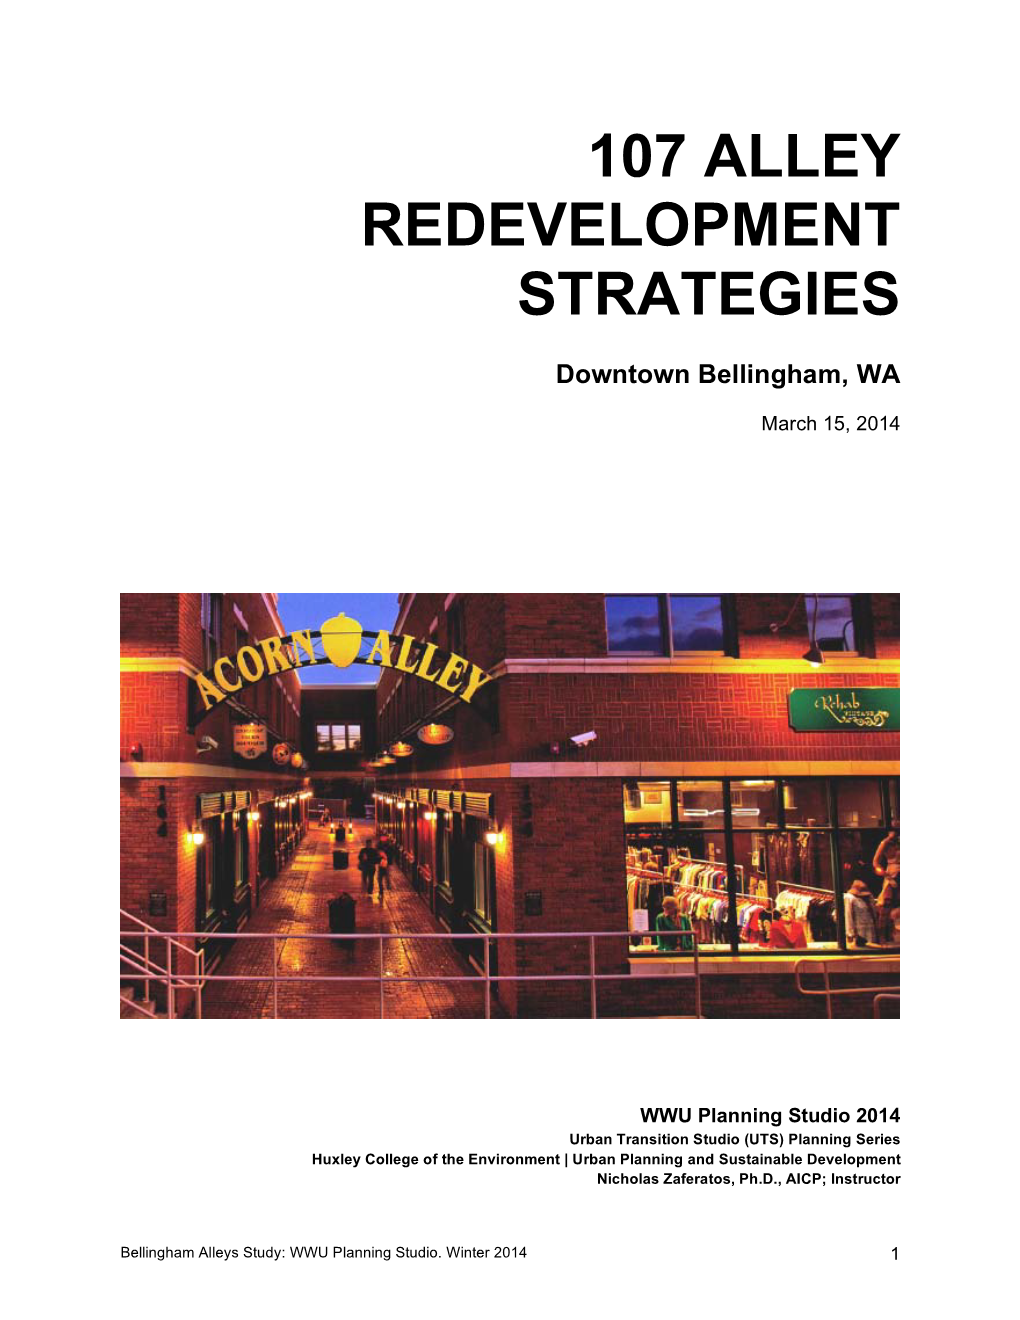 107 Alley Redevelopment Strategies